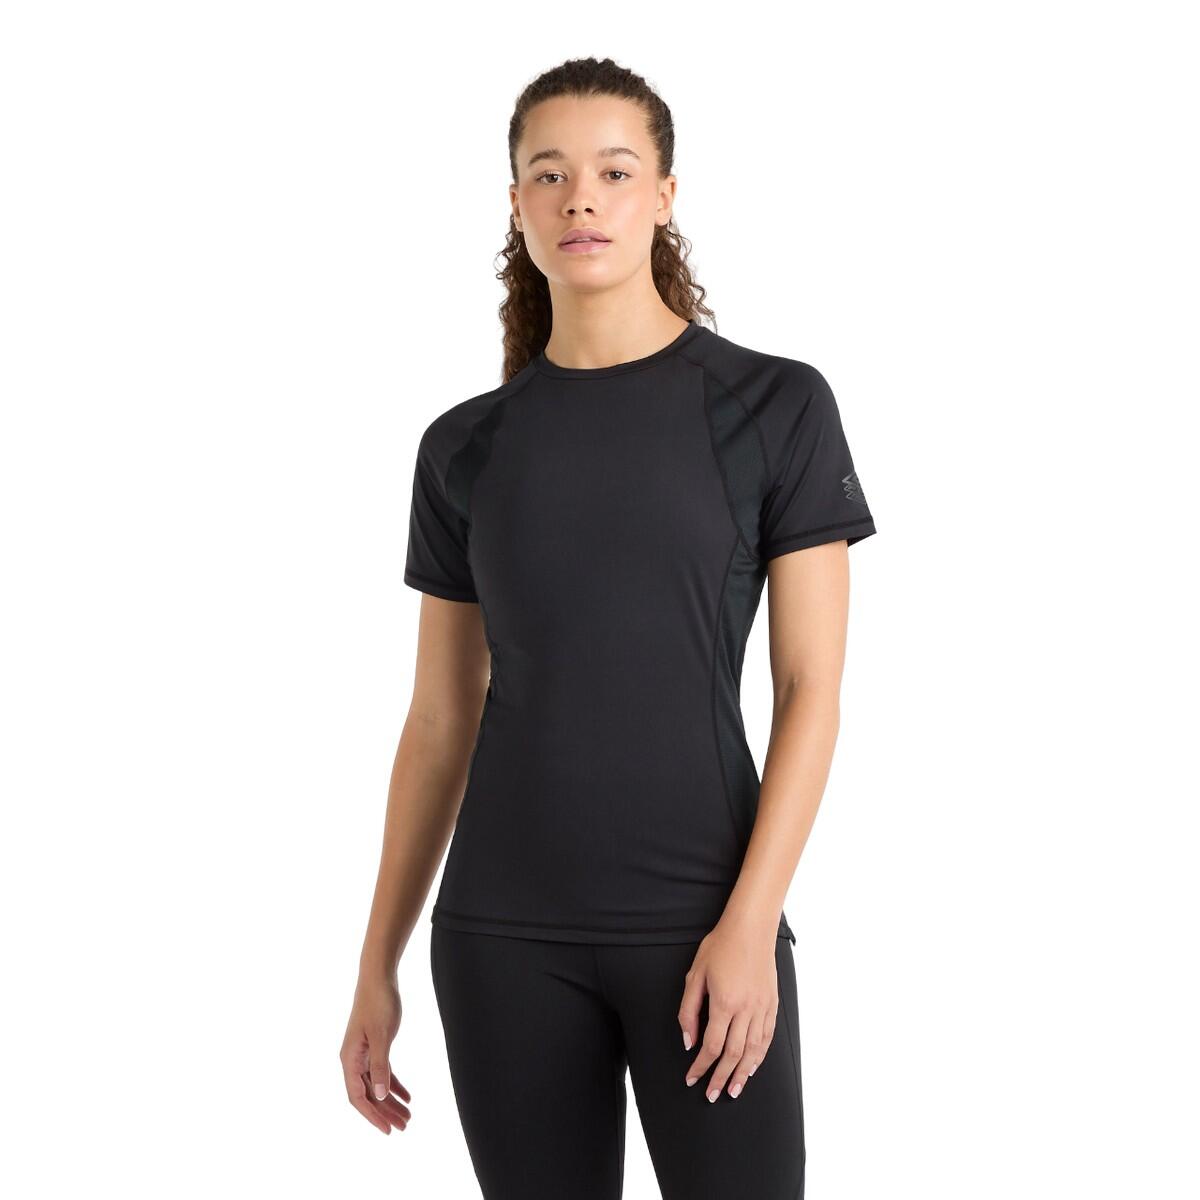 Womens/Ladies Pro Training Polyester TShirt (Black) 3/4